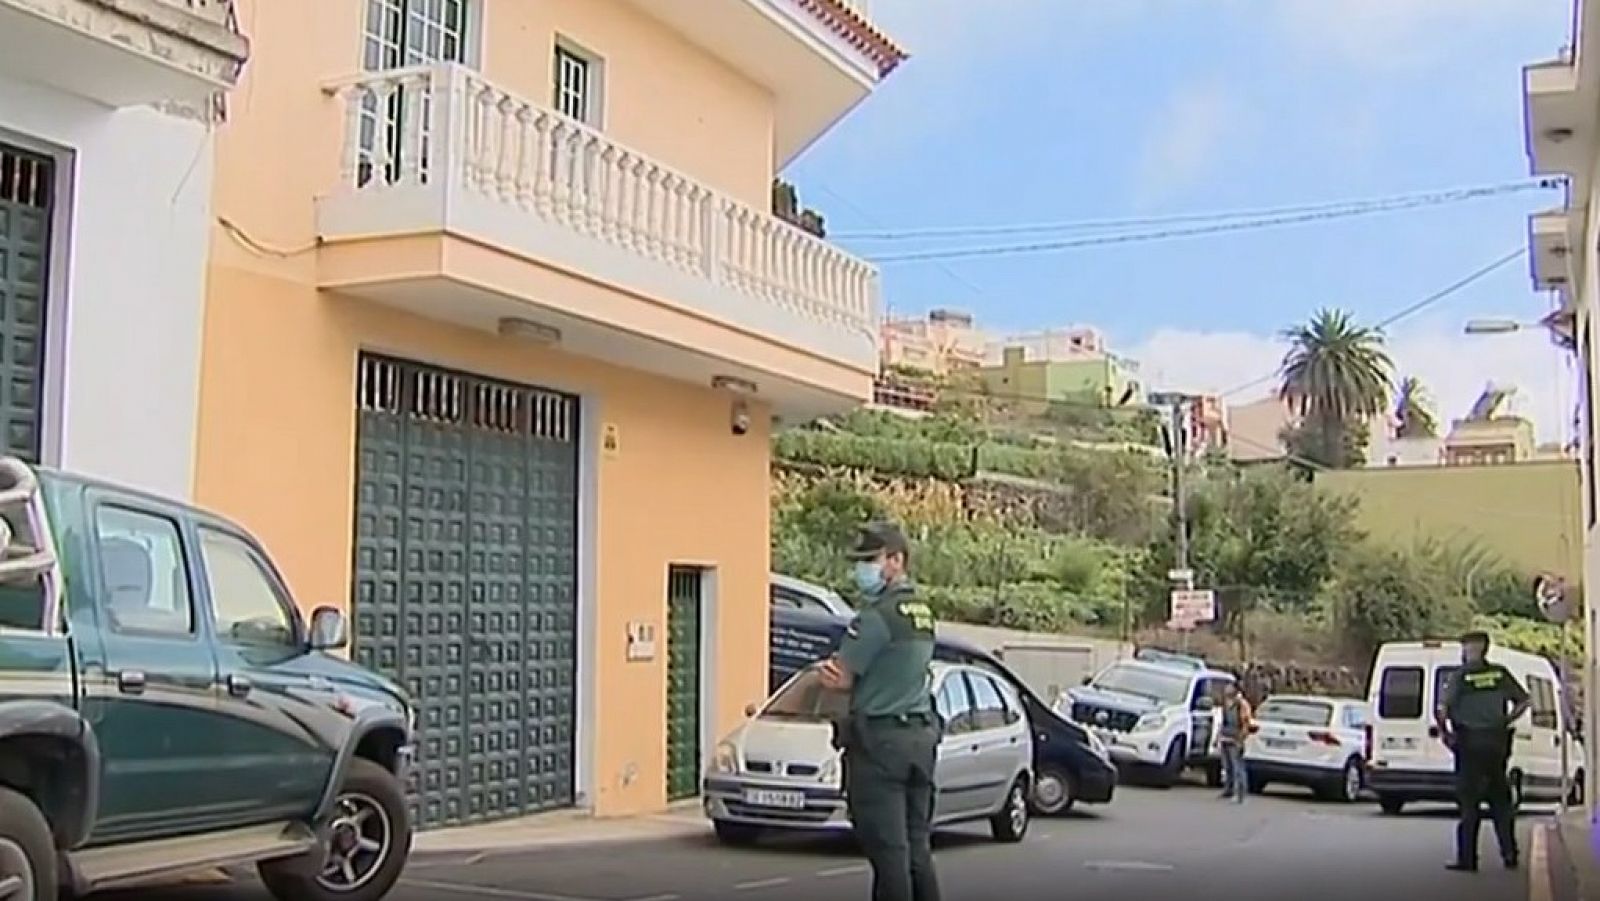 Asesinada una mujer presuntamente por su pareja en Santa Úrsula, Tenerife